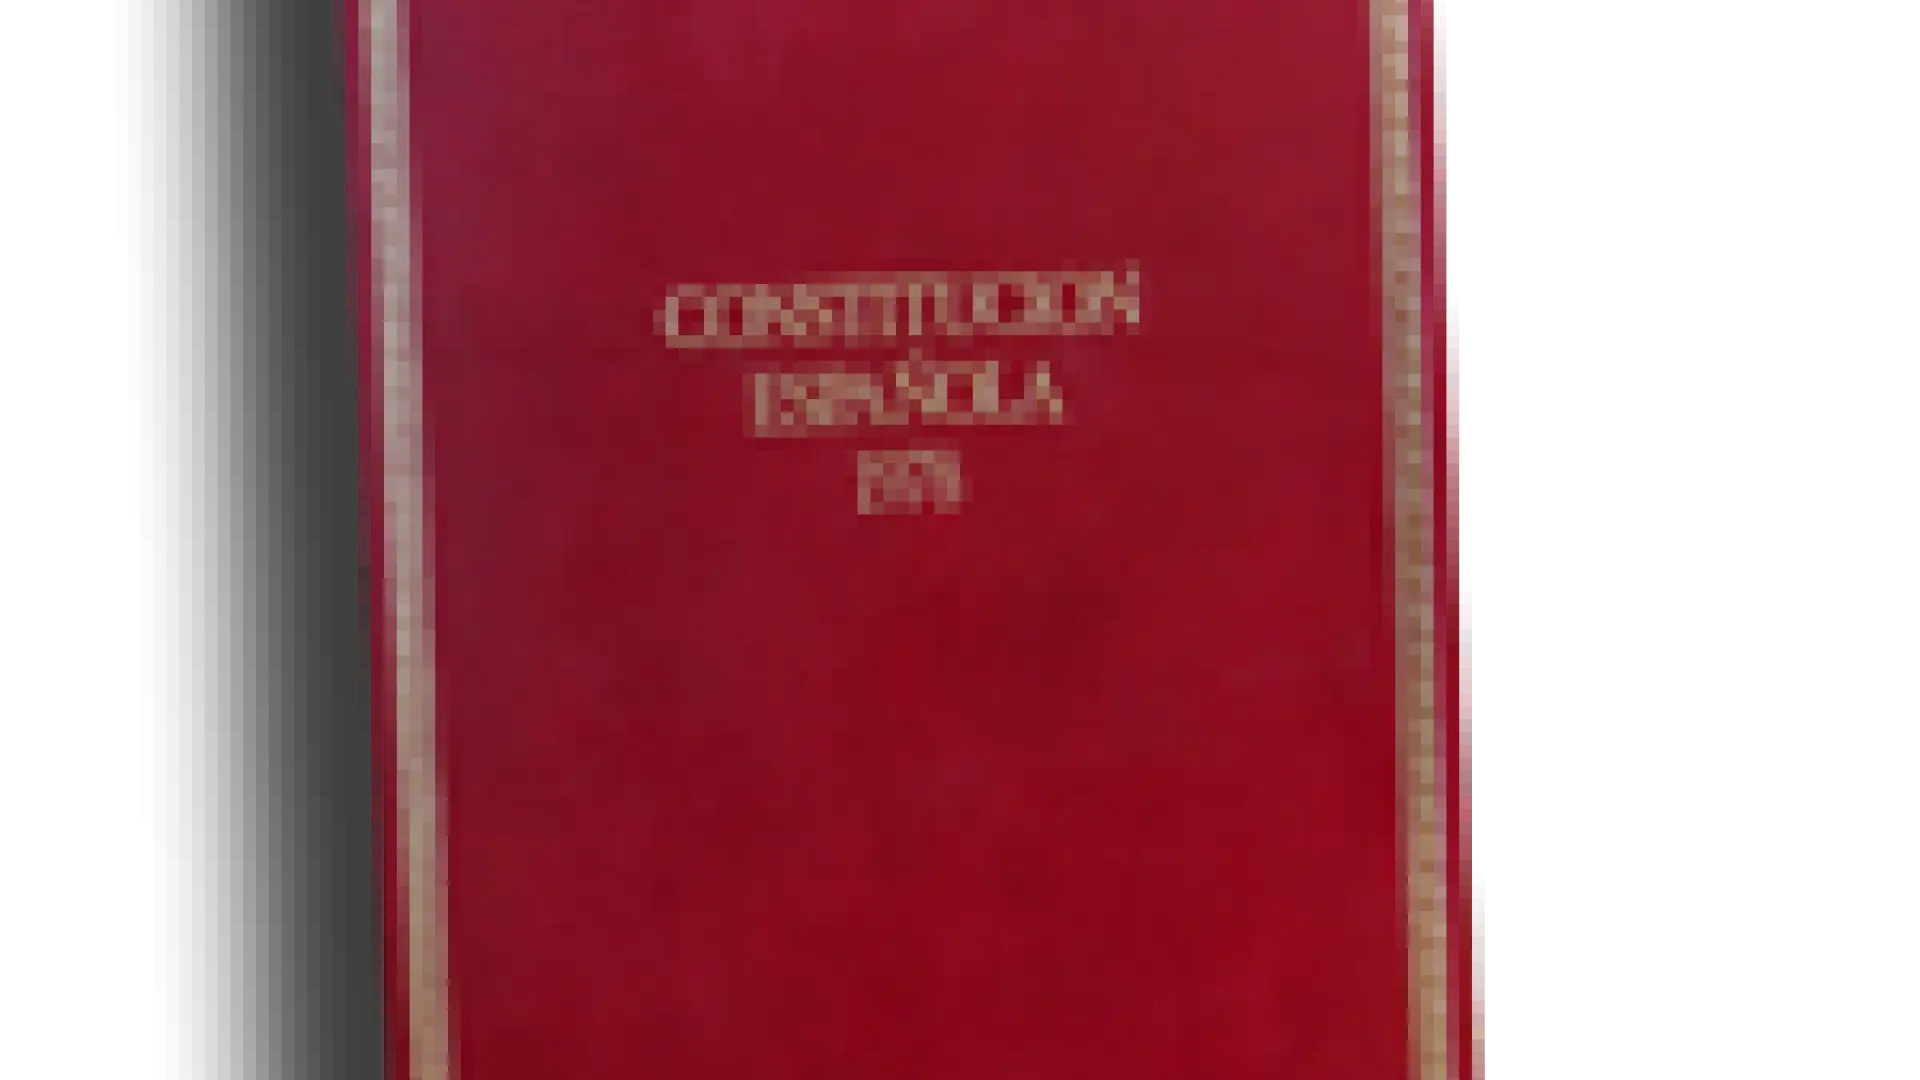 Portada libro de la Constitución Española de 1978